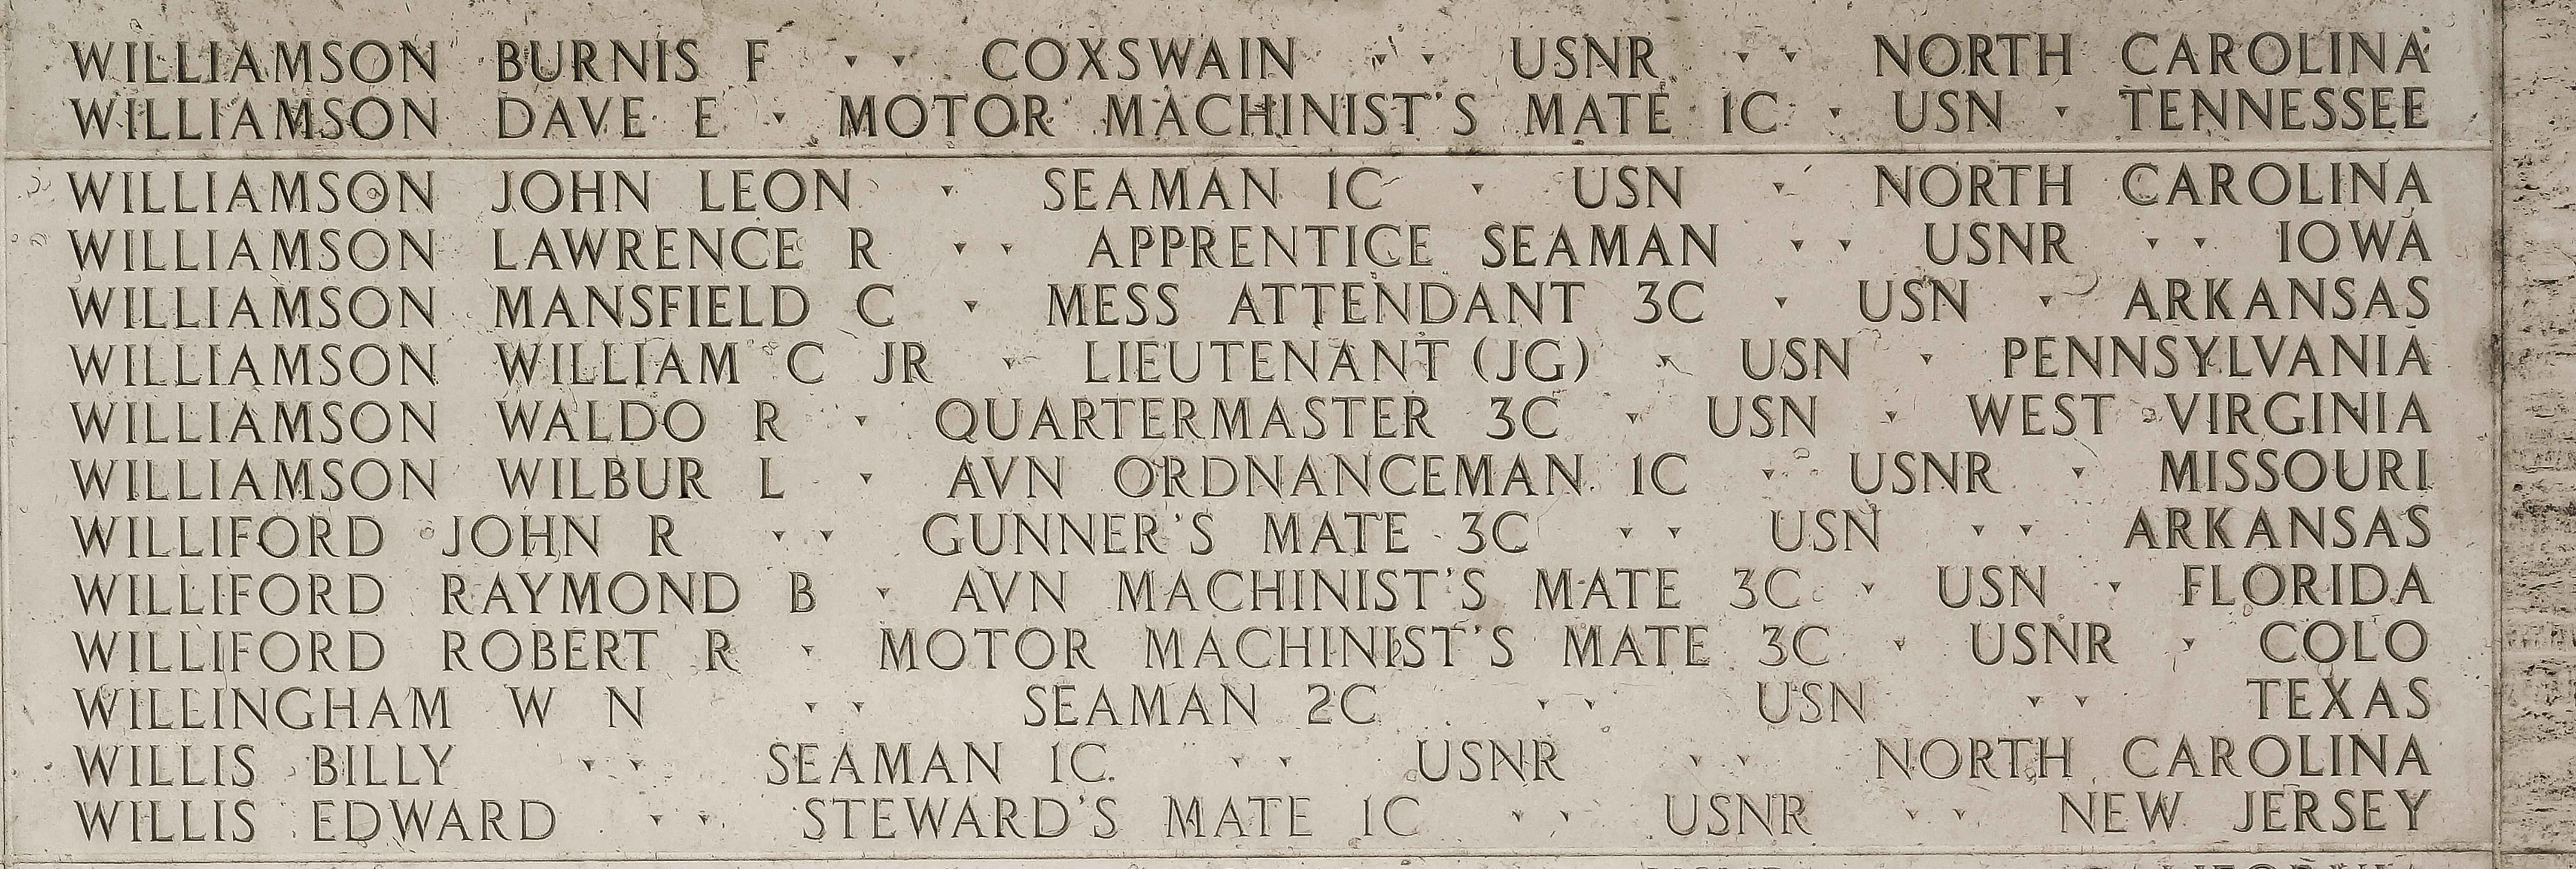 William C. Williamson, Lieutenant Junior Grade